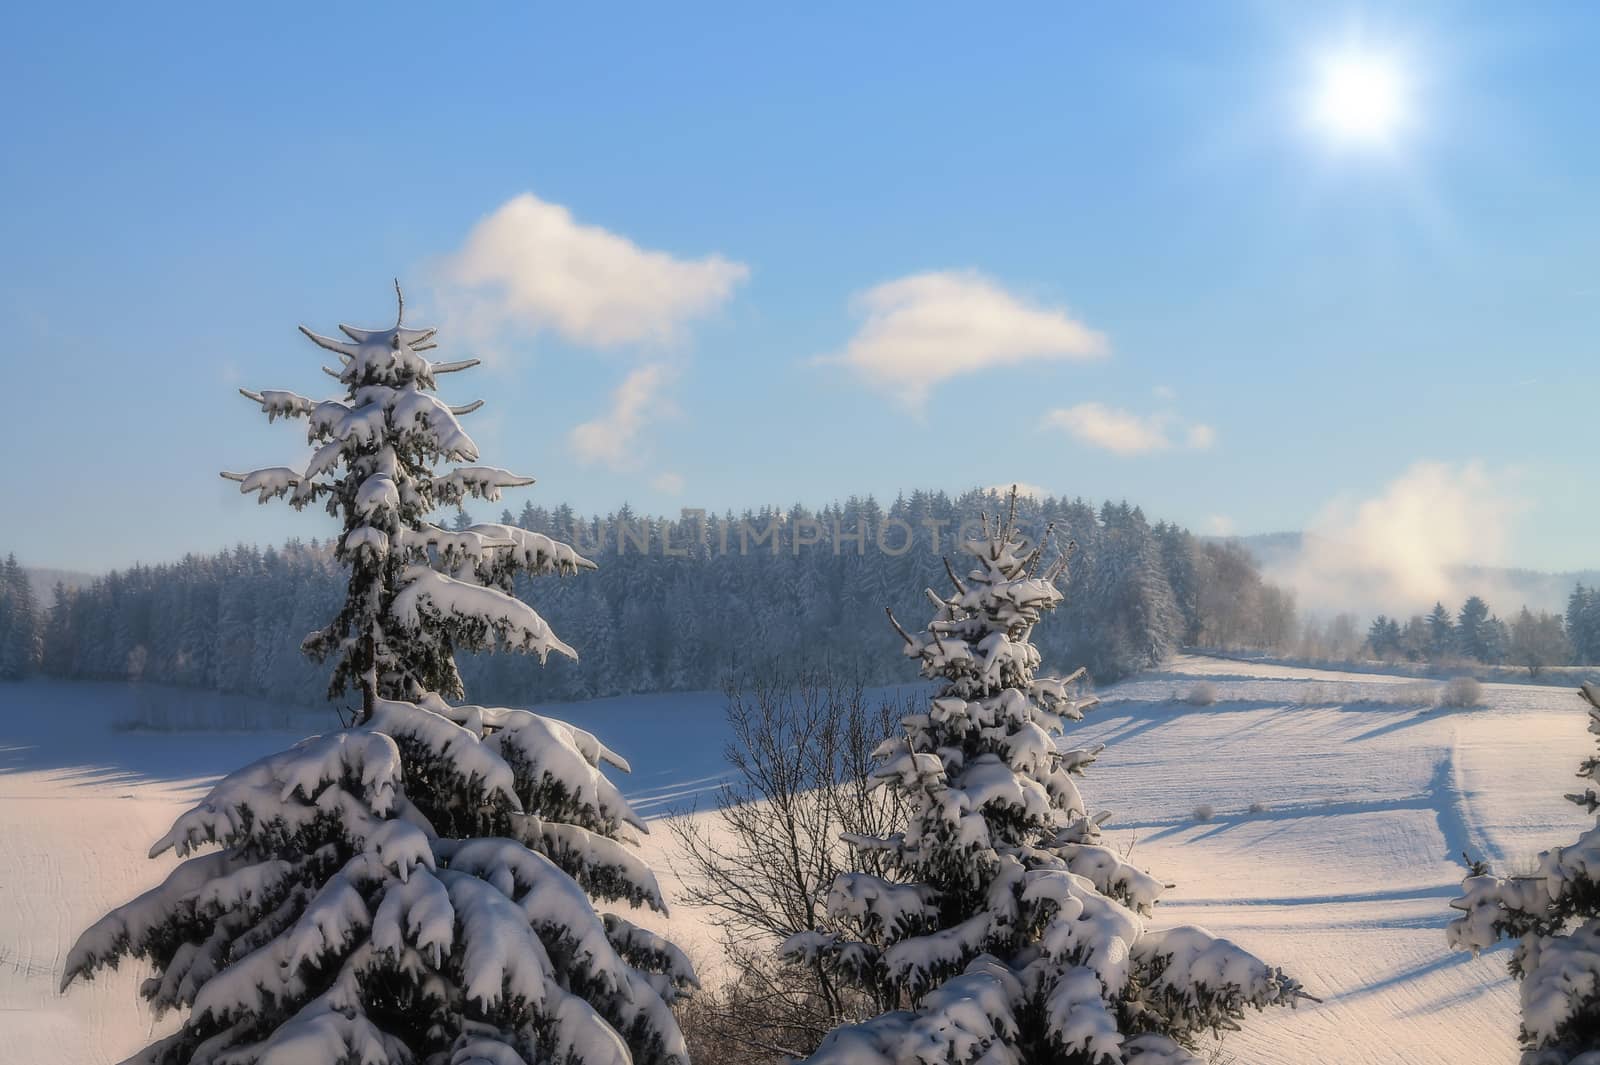 A beautiful winter landscape scene with blue sky